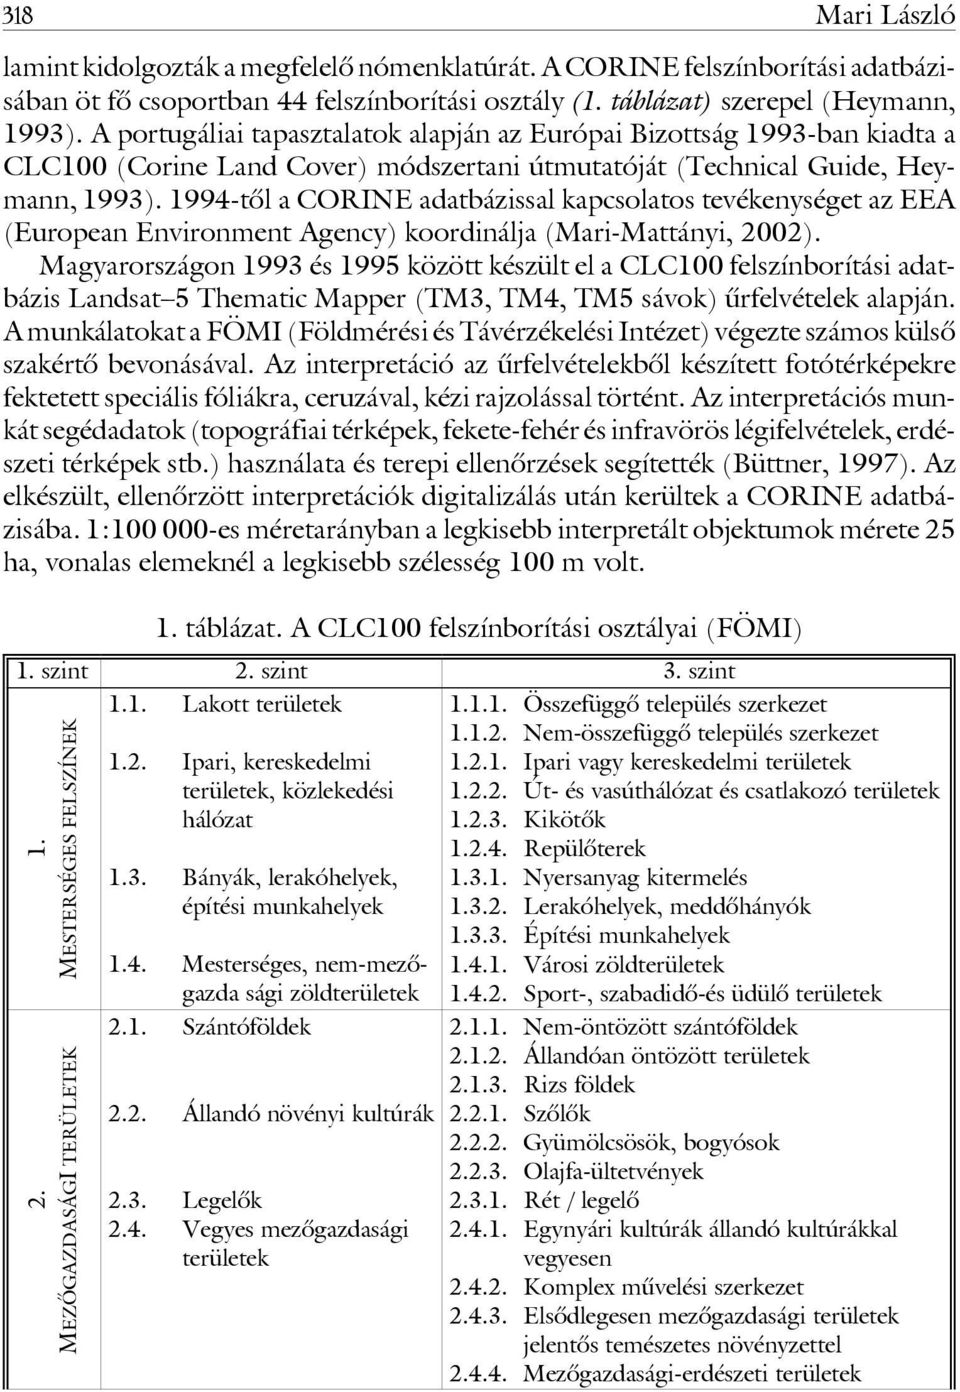 1994-tôl a CORINE adatbázissal kapcsolatos tevékenységet az EEA (European Environment Agency) koordinálja (Mari-Mattányi, 2002).